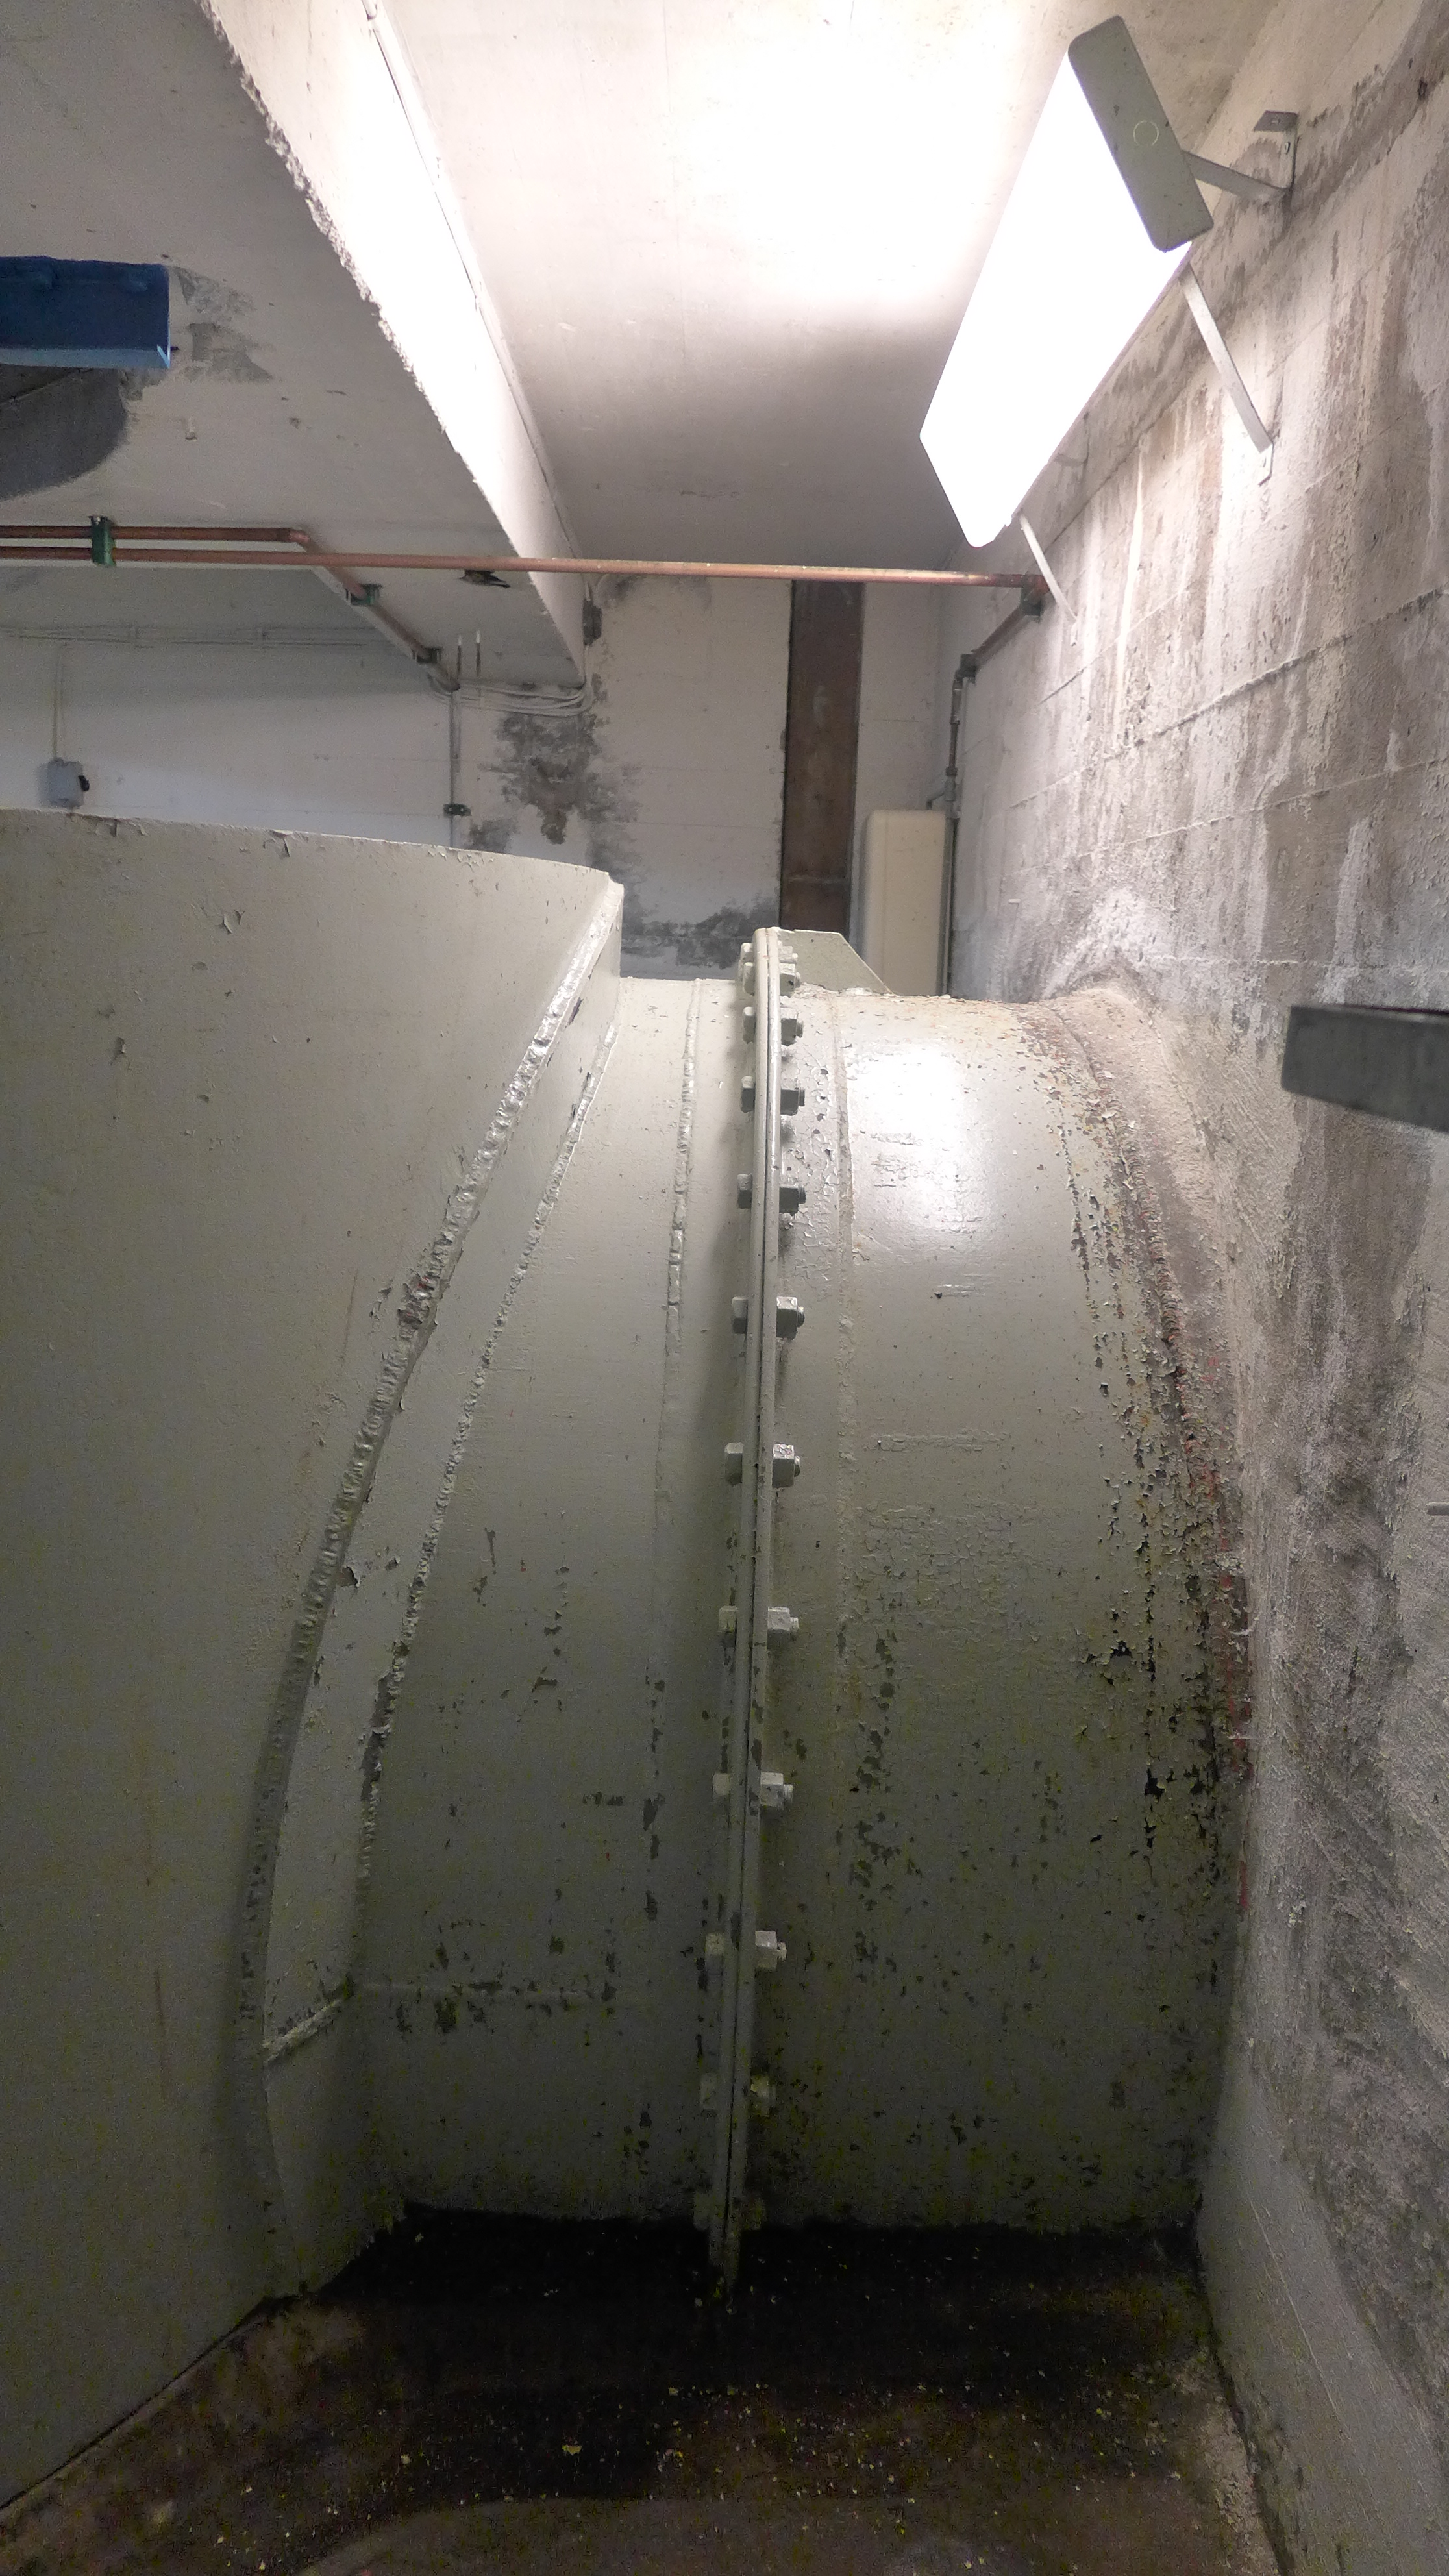 Vattnet leds in i turbinen via en ståltub, som här precis passerat igenom kraftstationens betongvägg.
